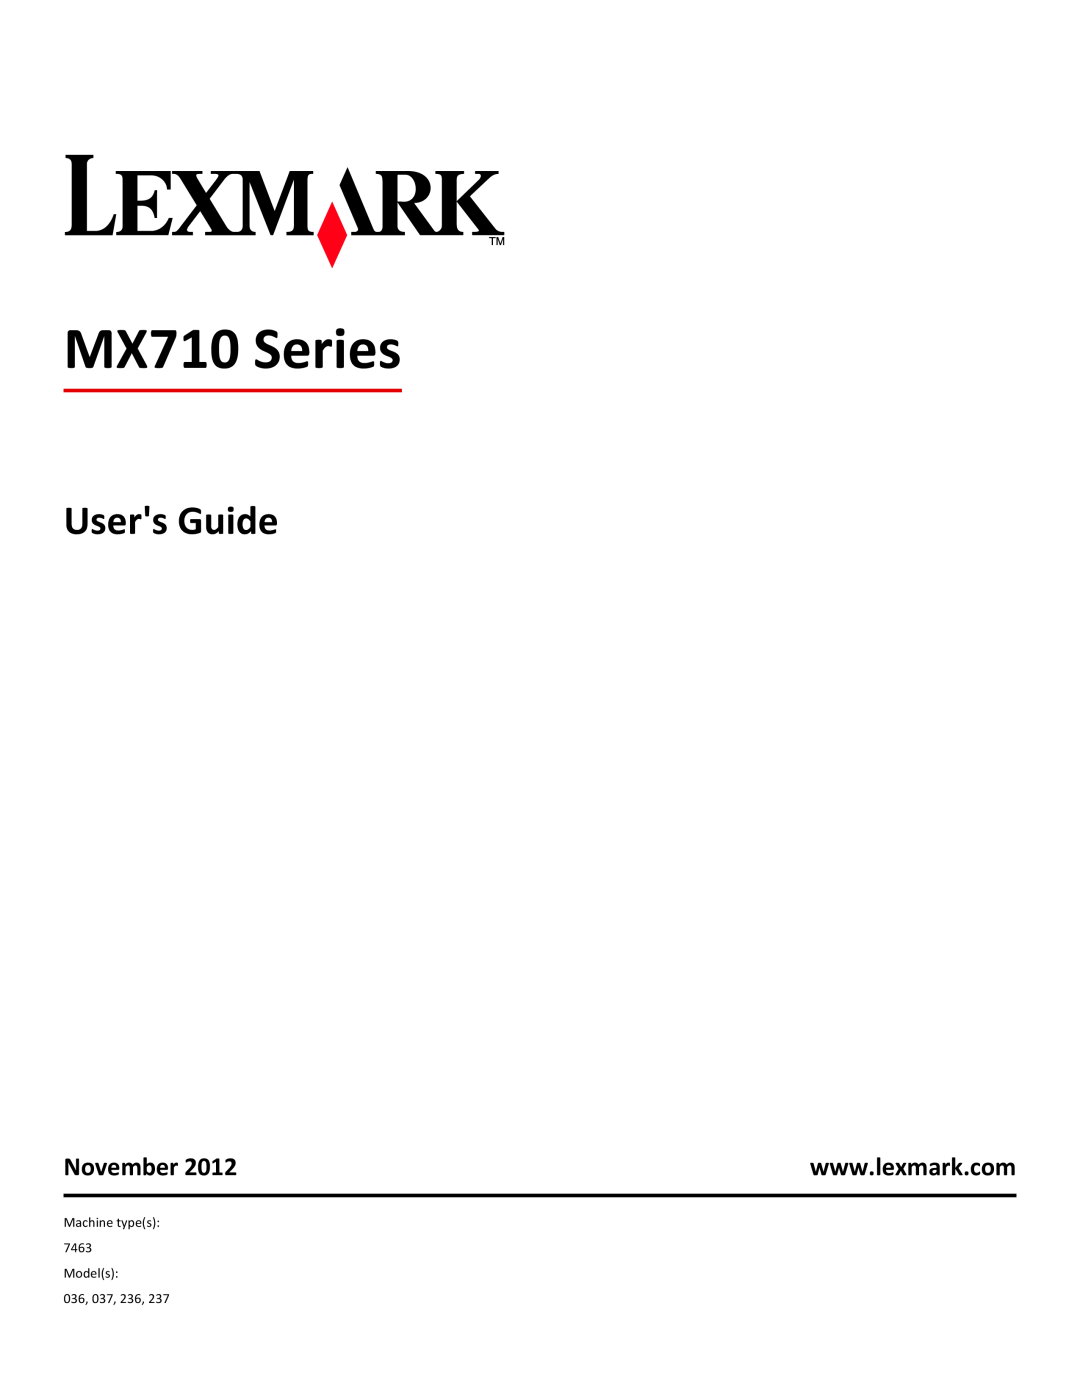 Lexmark MX710DHE, 24T7310, 237, 037 manual Users Guide, November, MX710 Series 